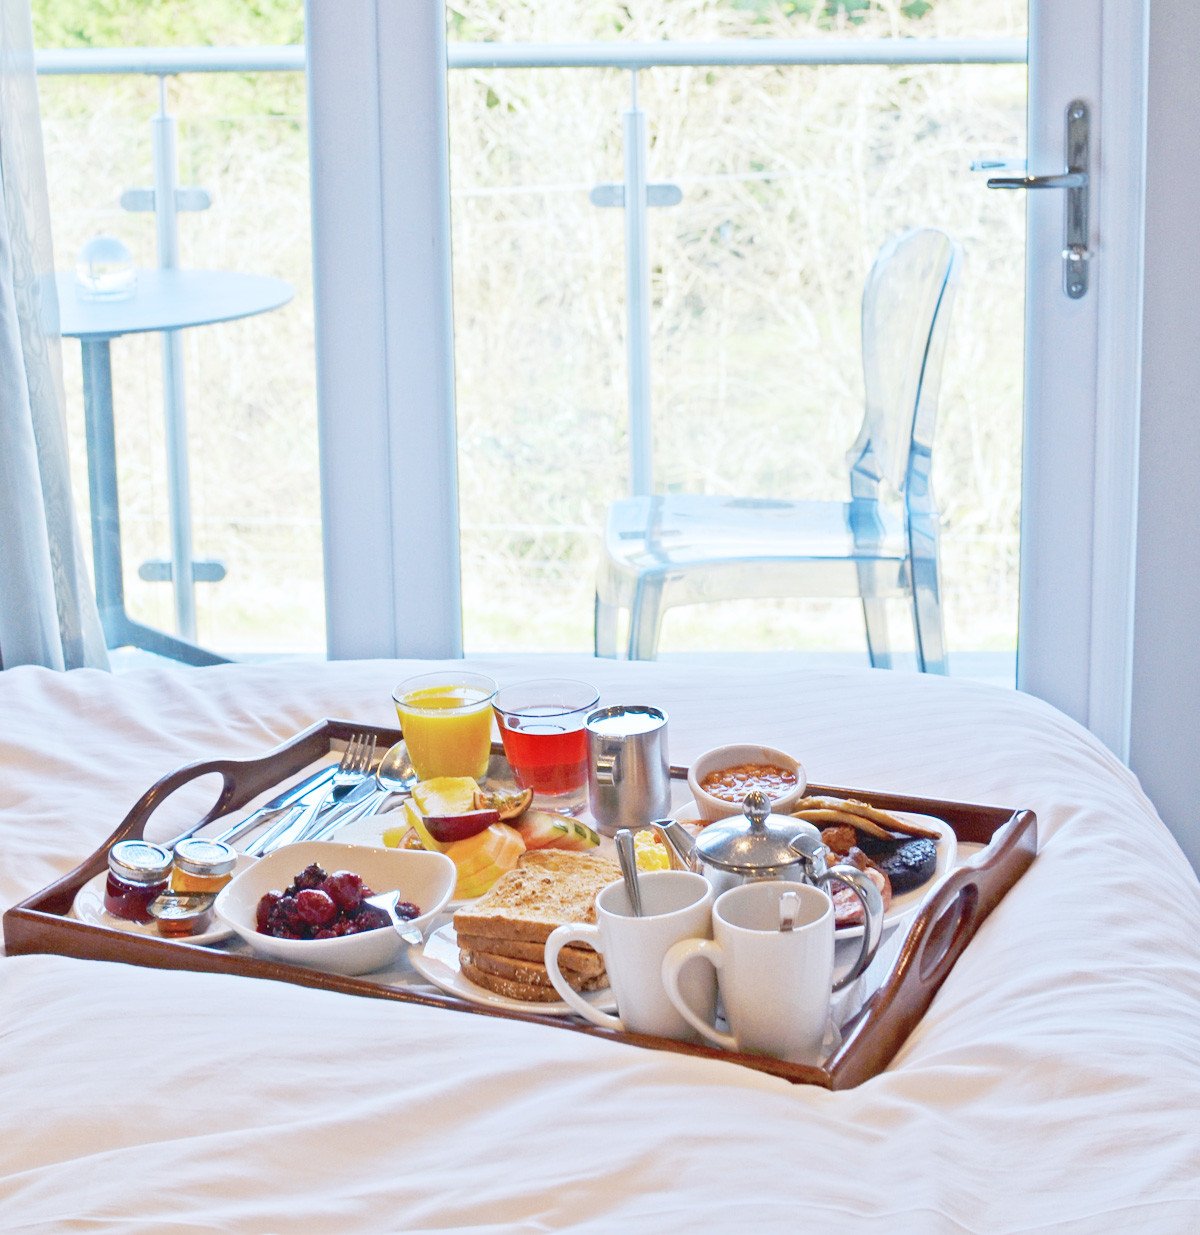 Breakfast in bed at Auchrannie Resort, Arran